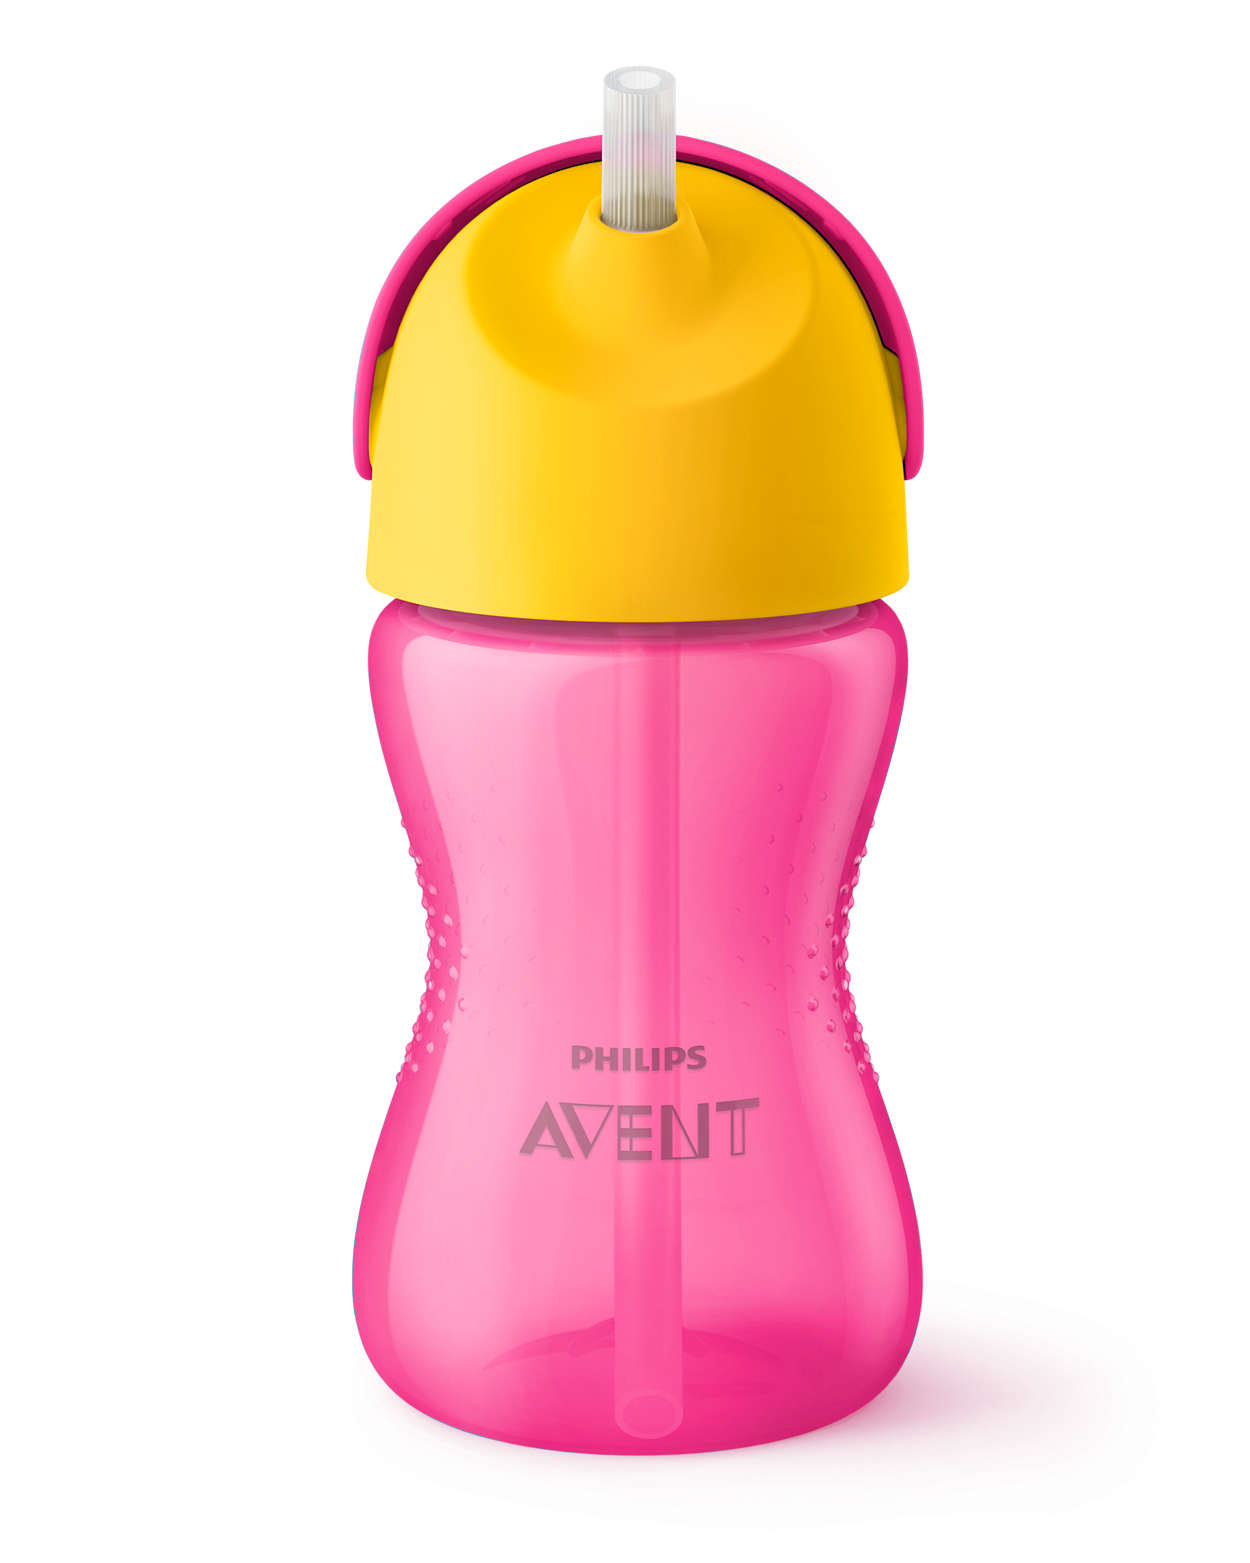 Bình tập uống bằng nhựa có ống hút hiệu Philips Avent (300ml/10oz) cho bé từ 12 tháng tuổi 798/00